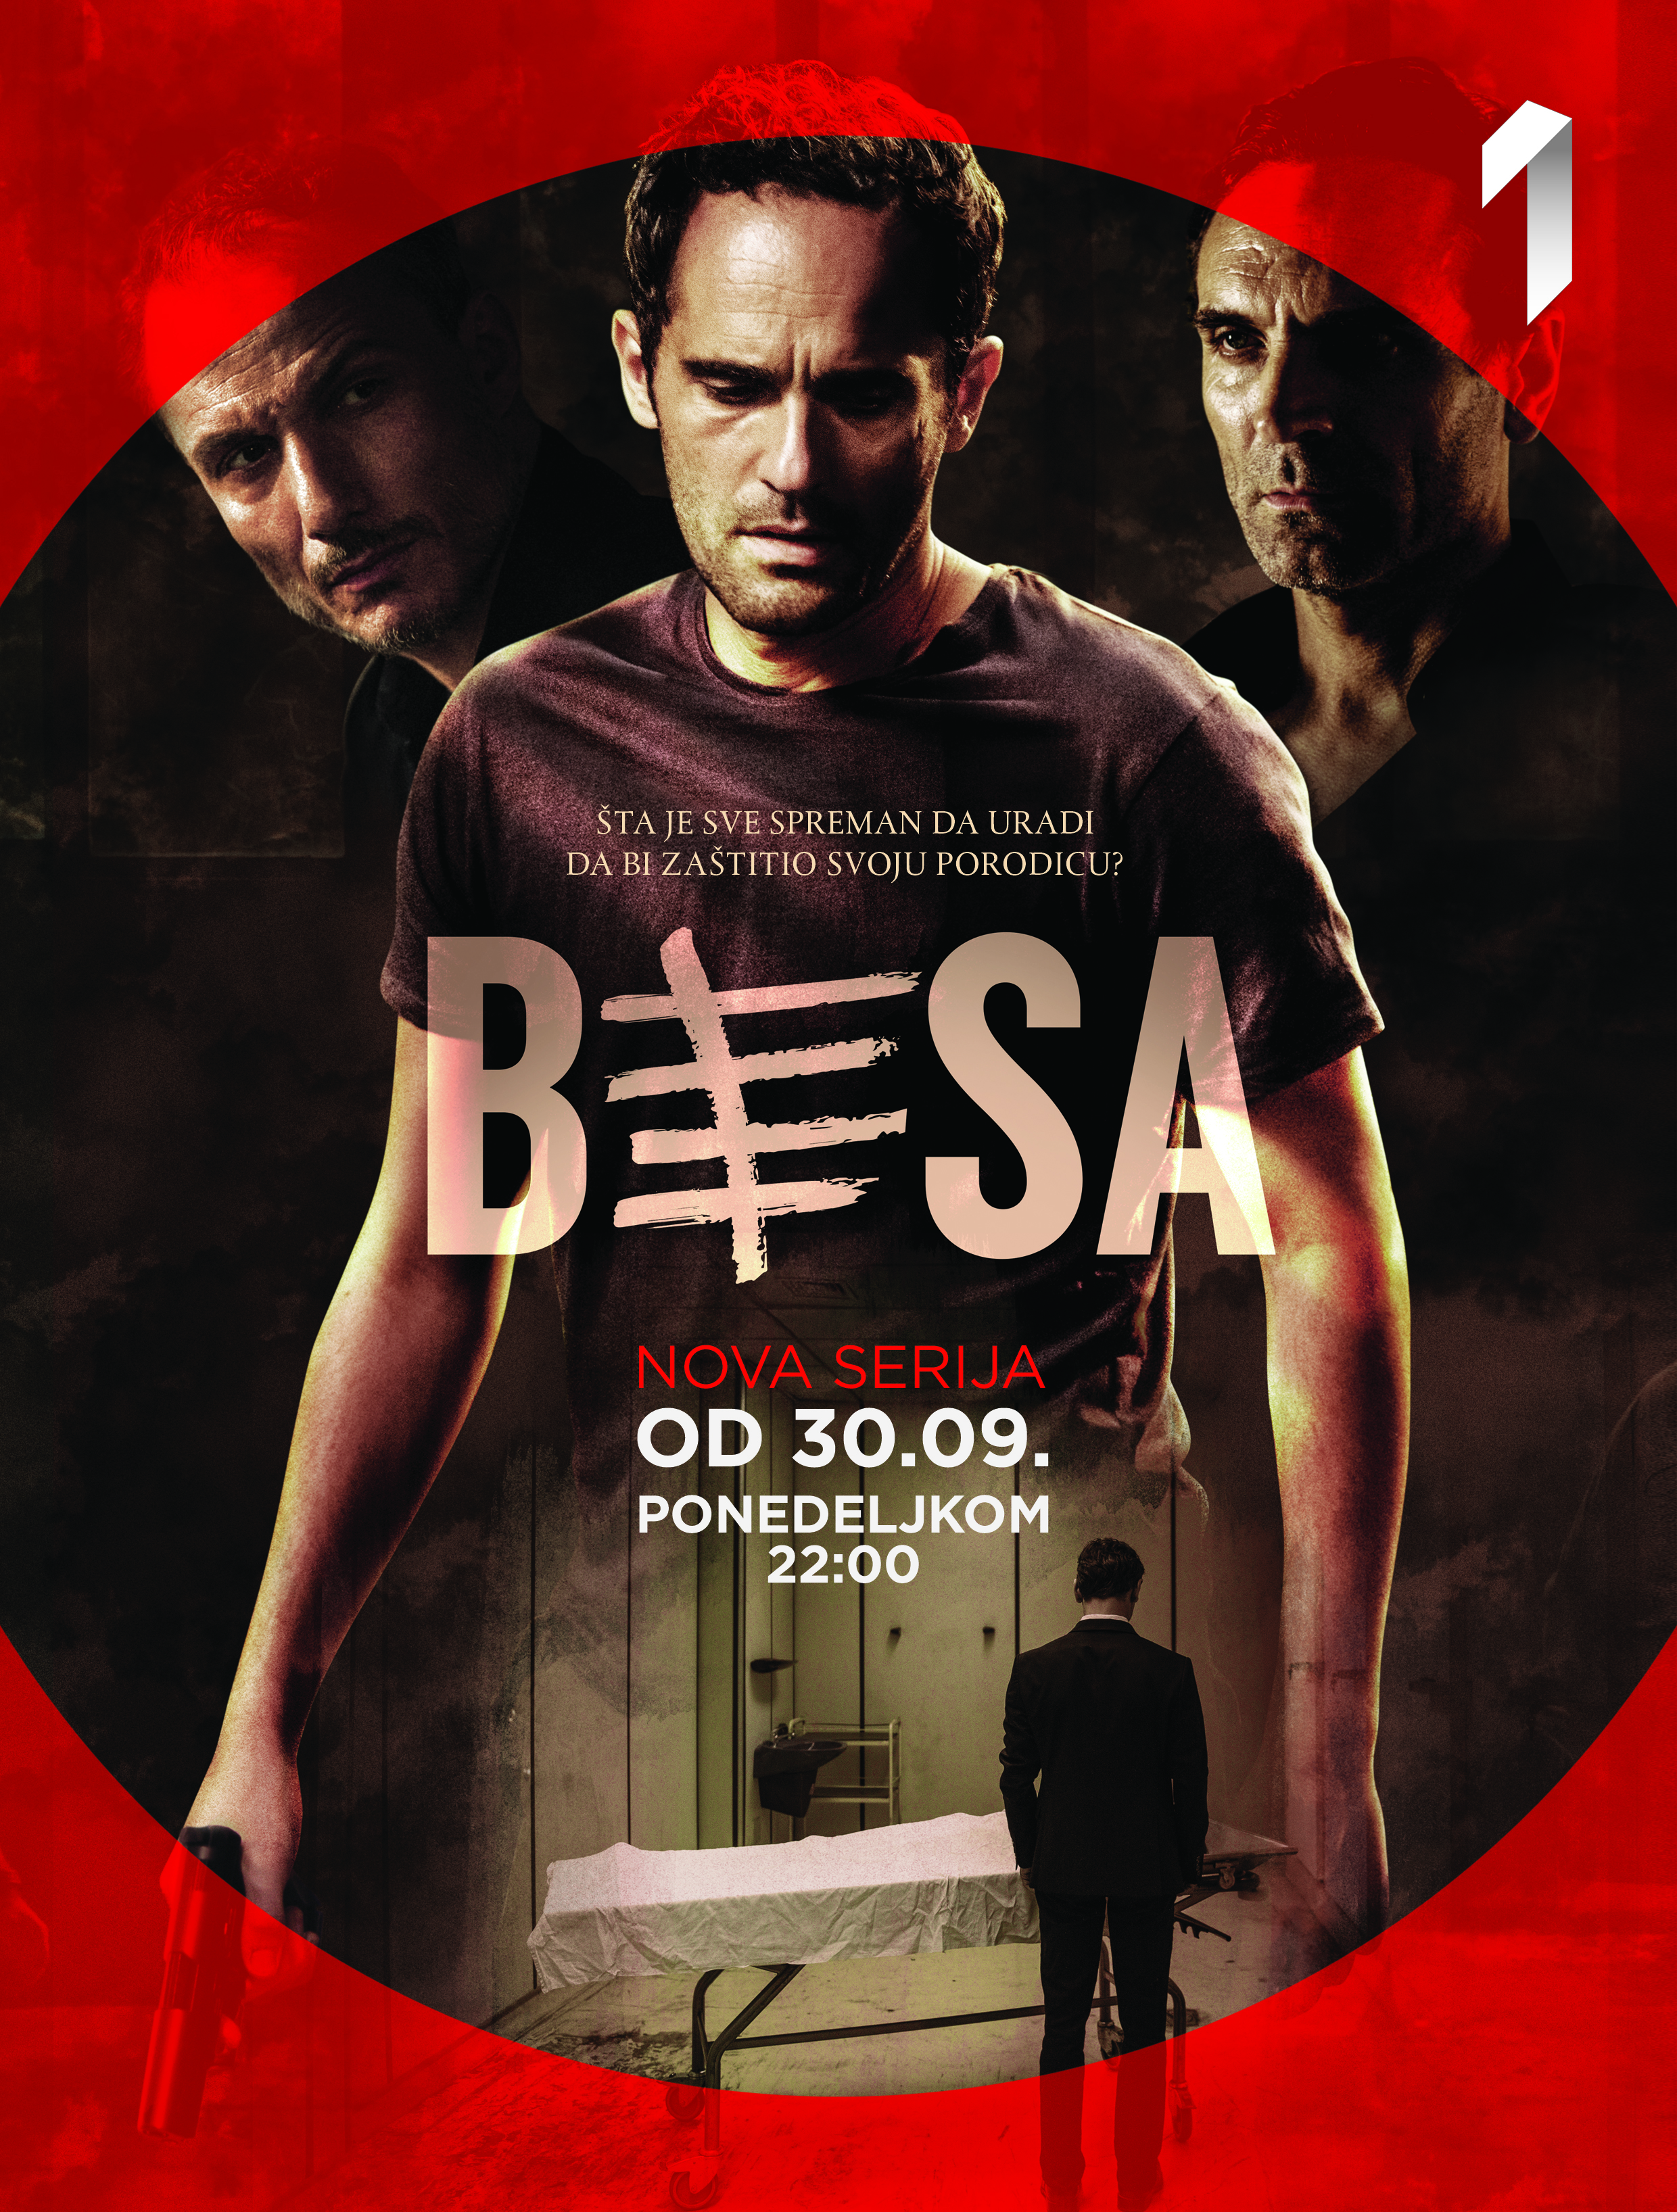 Stiže hit kriminalistička serija: “BESA” - Od 30. septembra, ponedeljkom u 22h na Prvoj televiziji